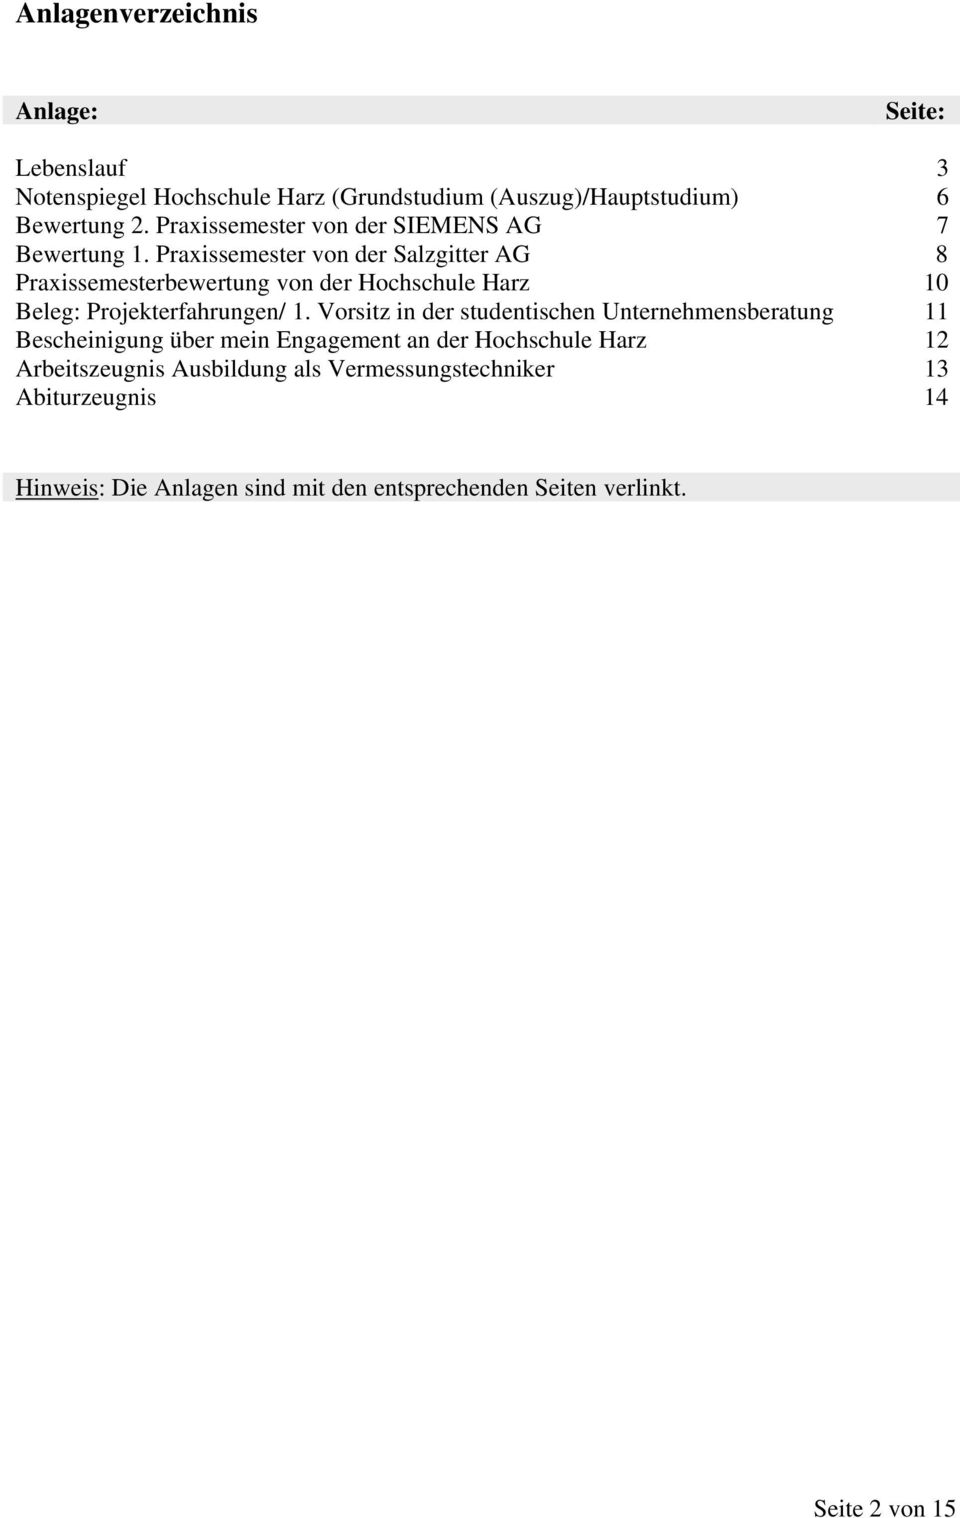 Praxissemester von der Salzgitter AG 7 8 Praxissemesterbewertung von der Hochschule Harz 10 Beleg: Projekterfahrungen/ 1.